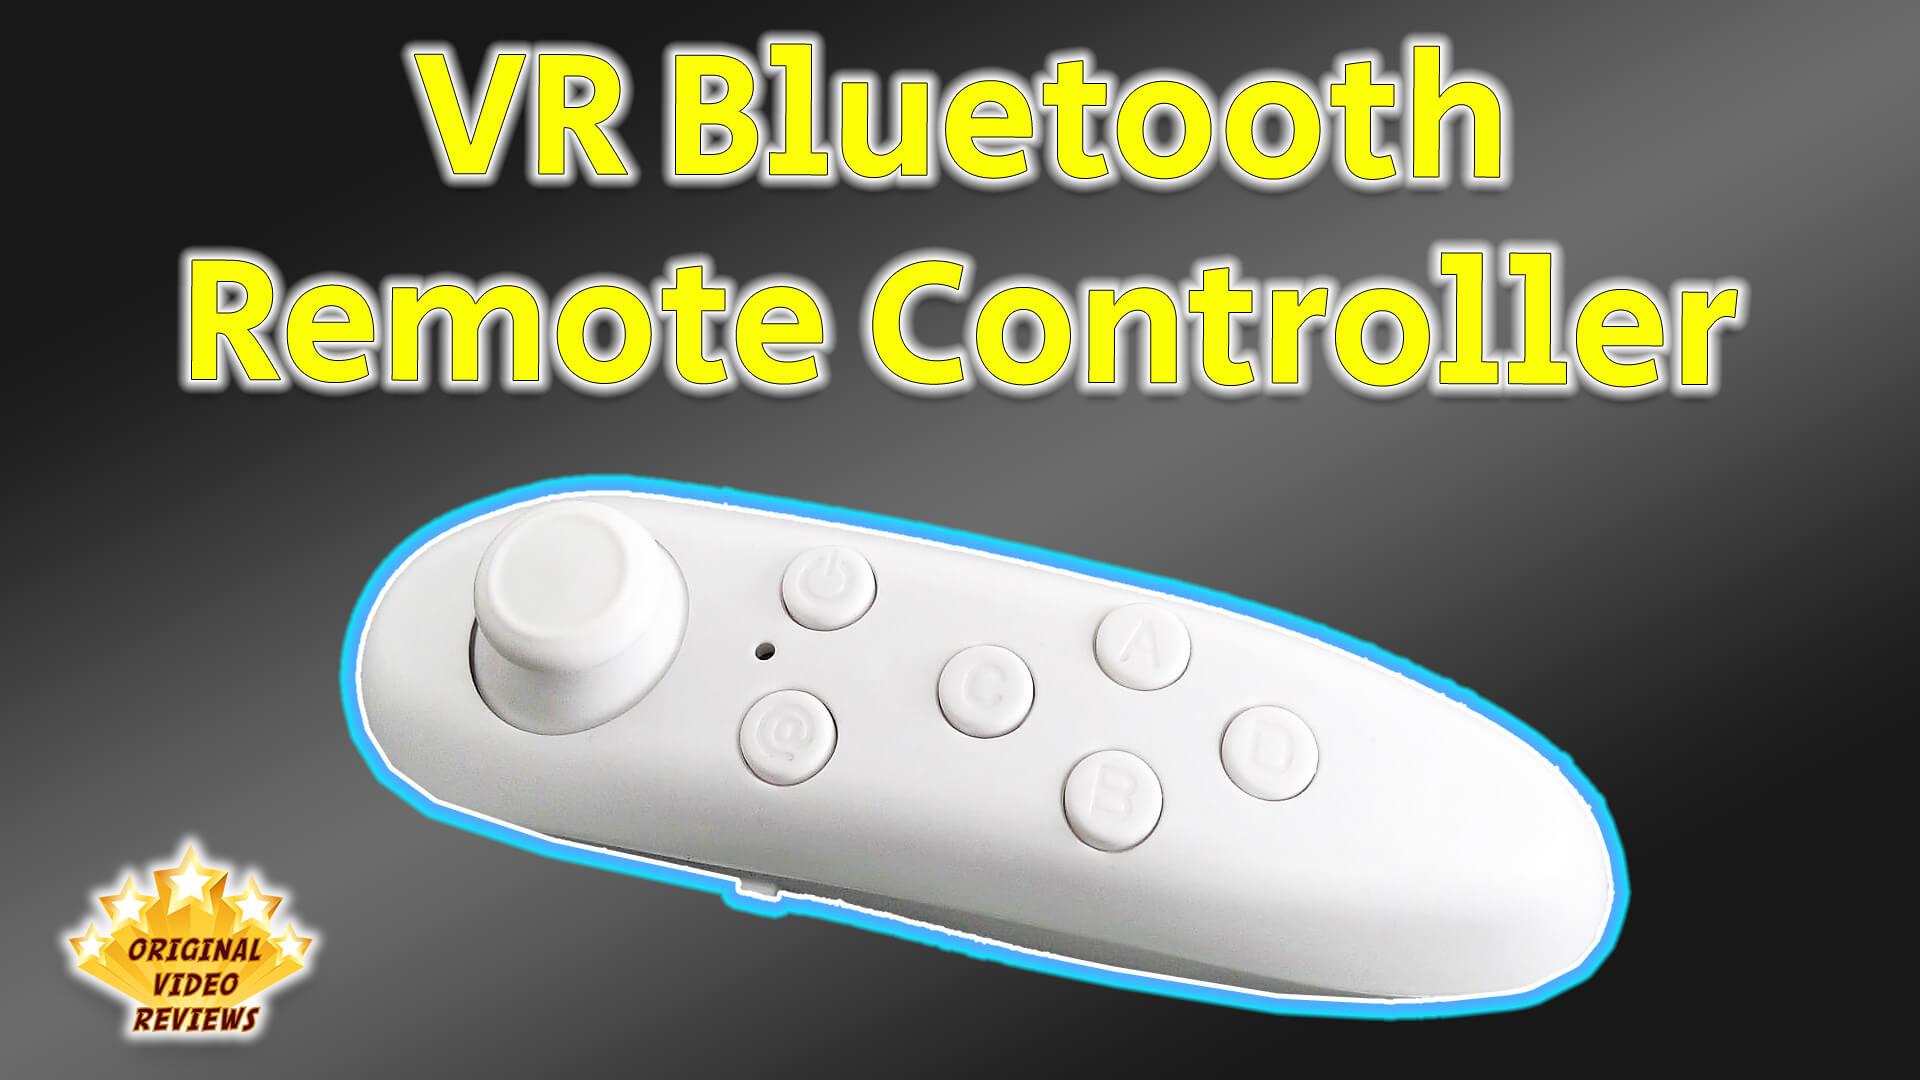 Præstation damp bjærgning VR Bluetooth Remote Controller (Review) - Original Video Reviews